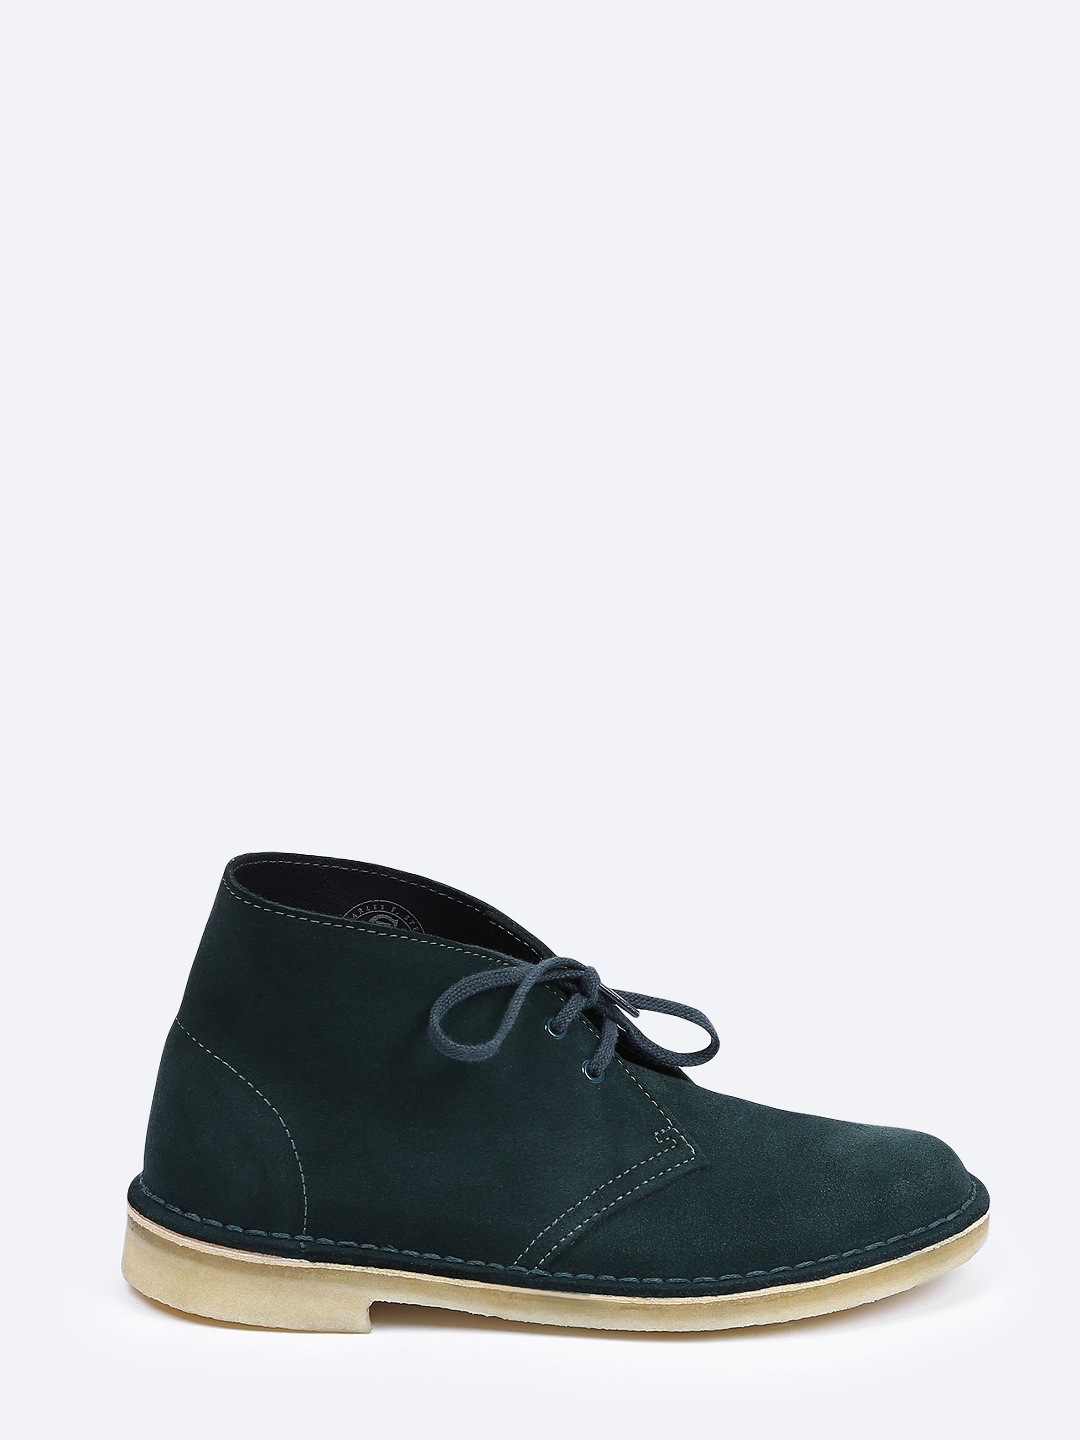 Ботинки Clarks 26121725 chamois green – Вьетнам, зеленого цвета, замша,  нубук. Купить в интернет-магазине в Москве. Цена 7240 руб.